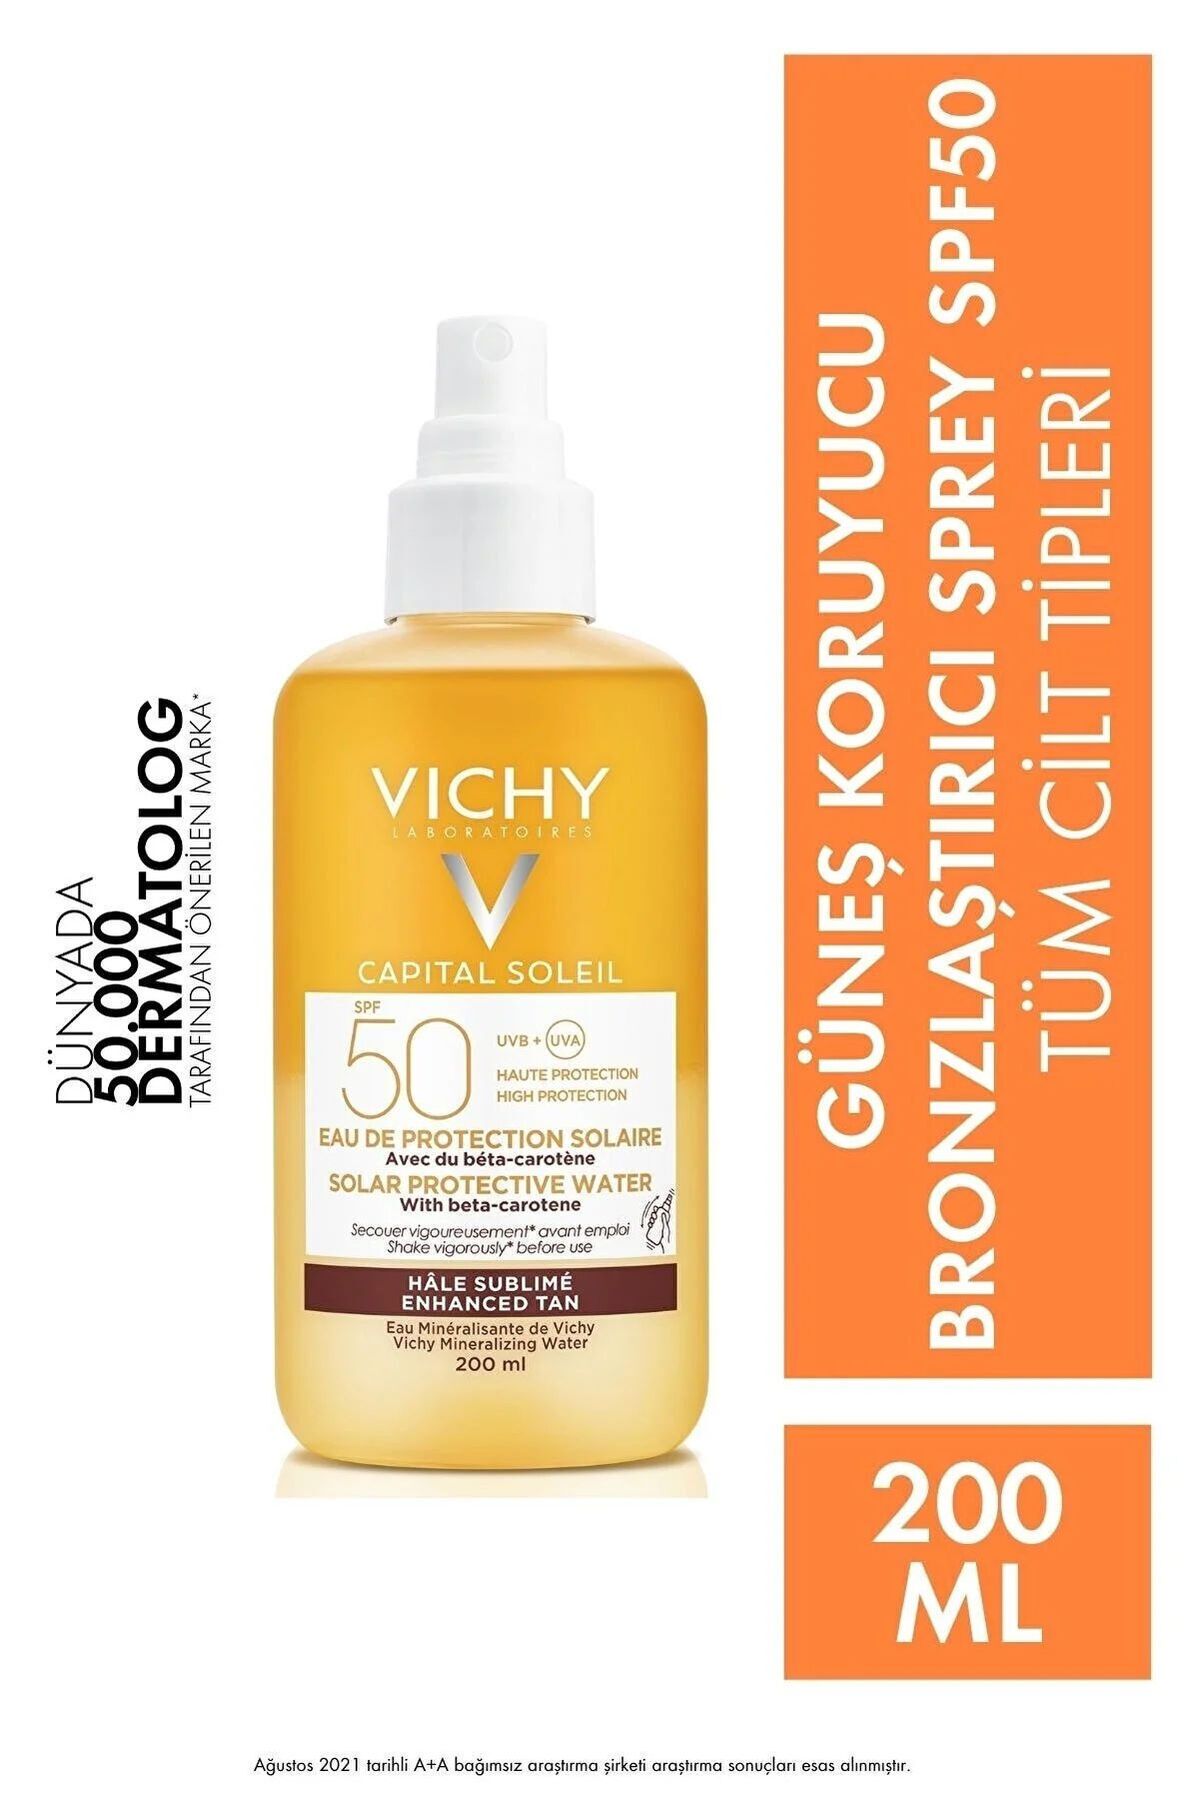 Vichy Capital Soleil SPF 50+ GüneşKoruyucu Sprey 200 ml Su Formunda Hafif Yüz Ve Vücut İçin GüneşKoruyucu